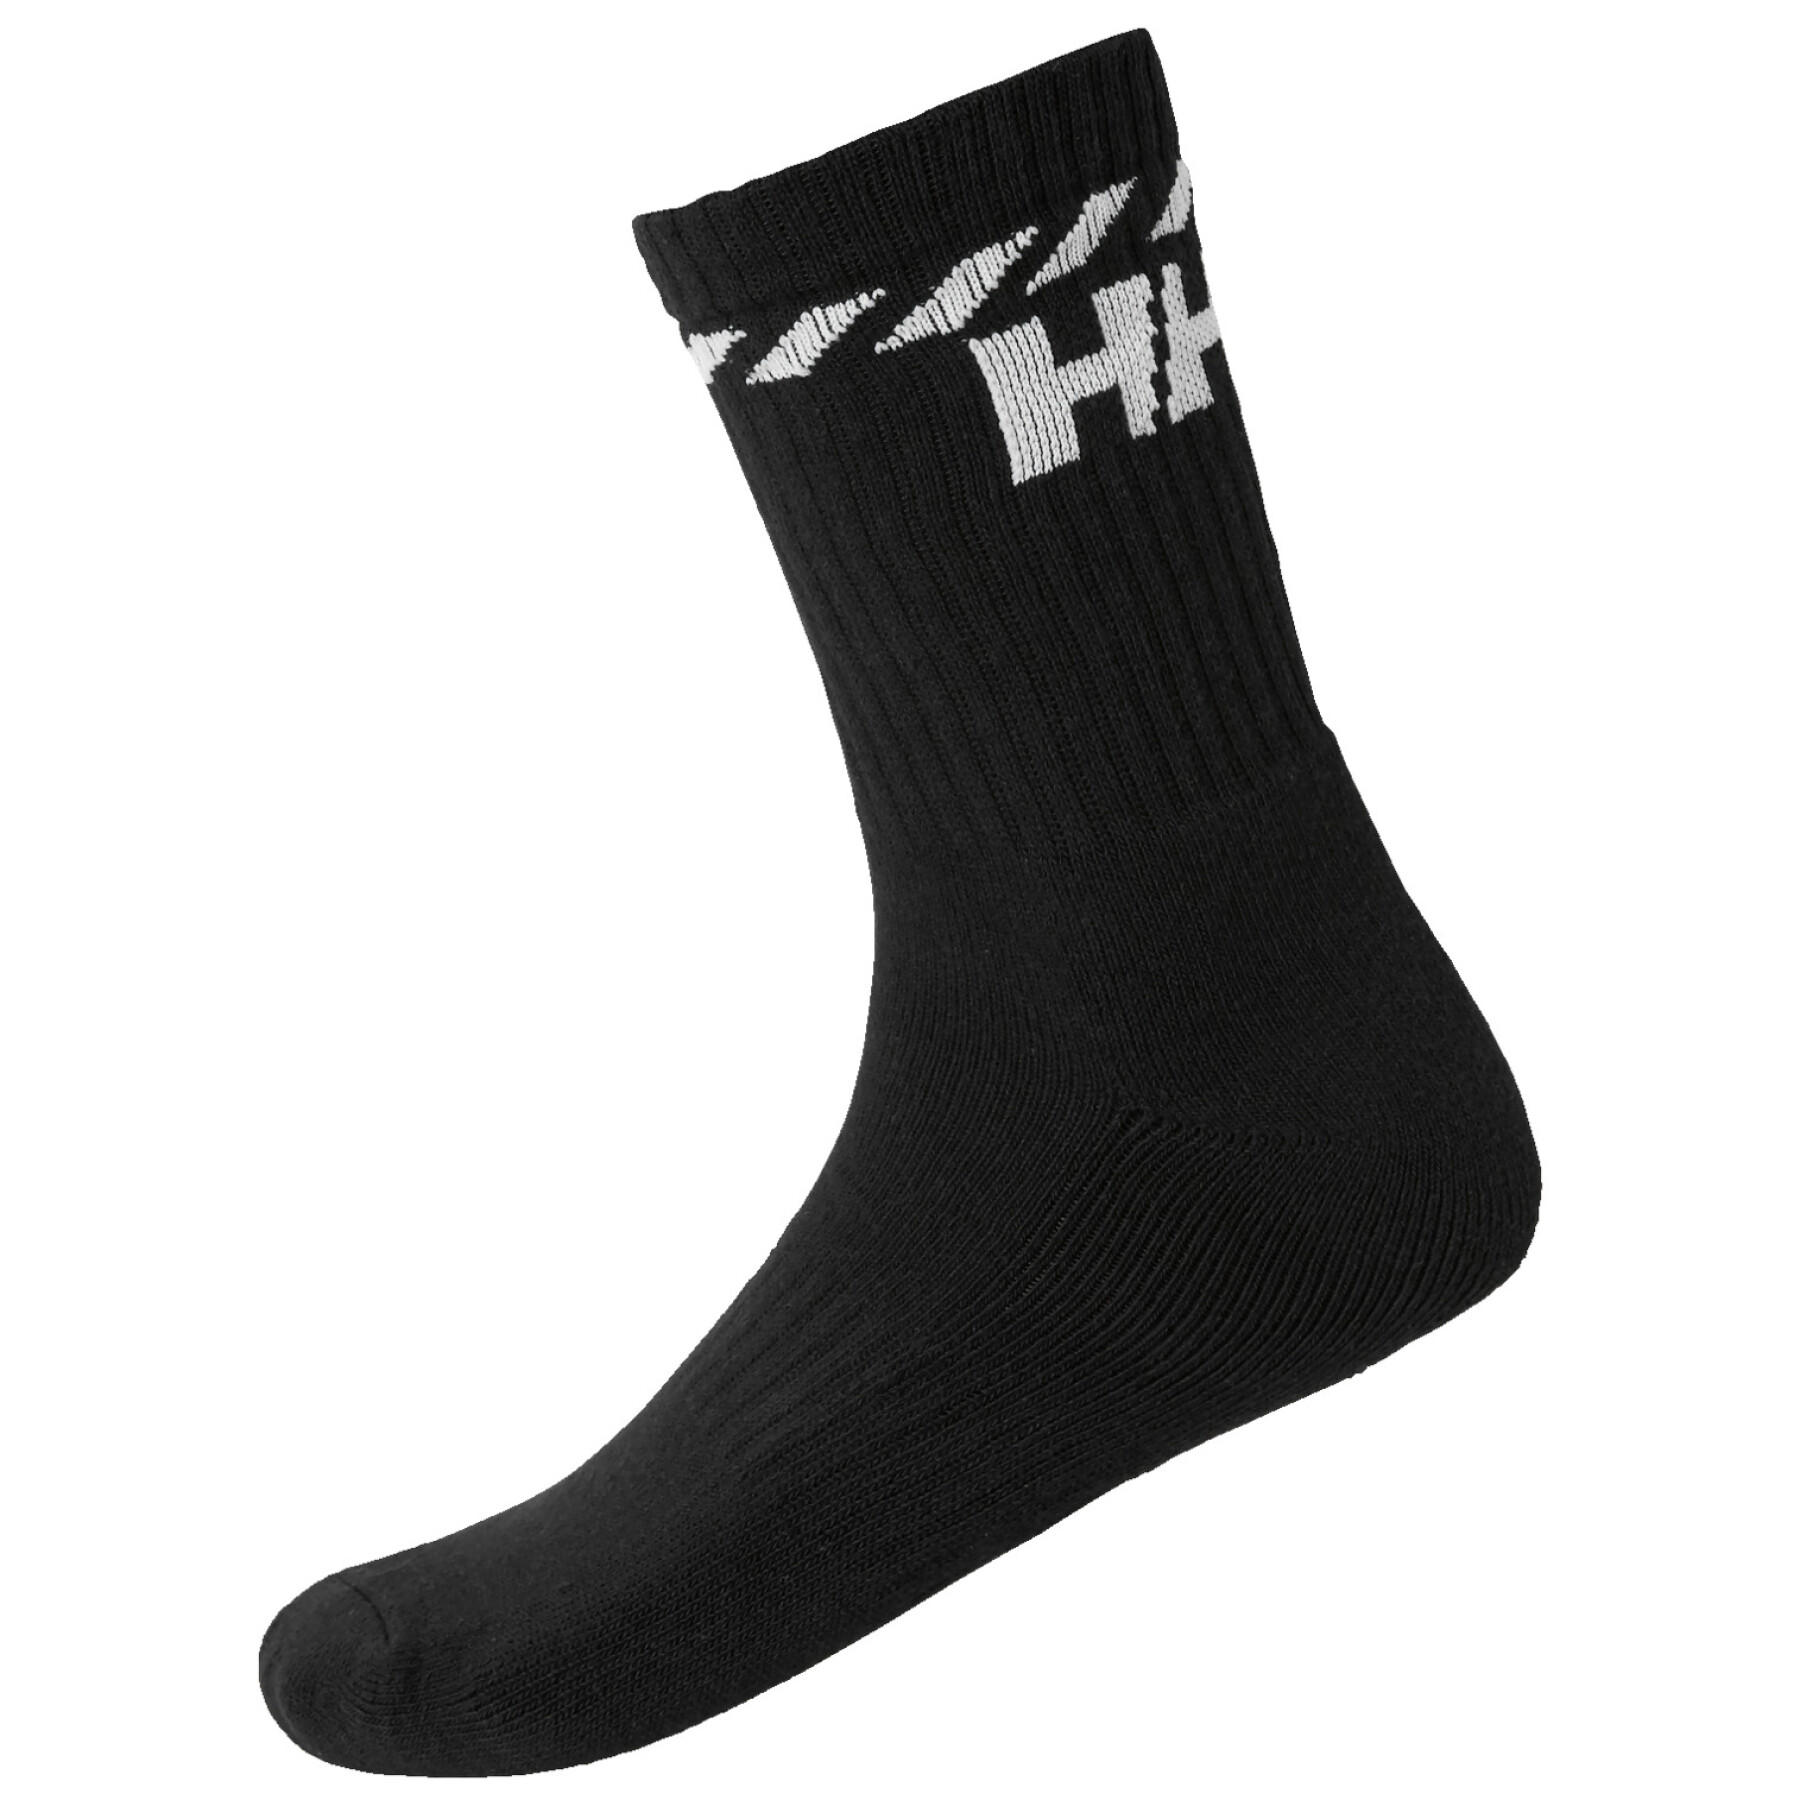 Socken aus Baumwolle Helly Hansen sport (x3)